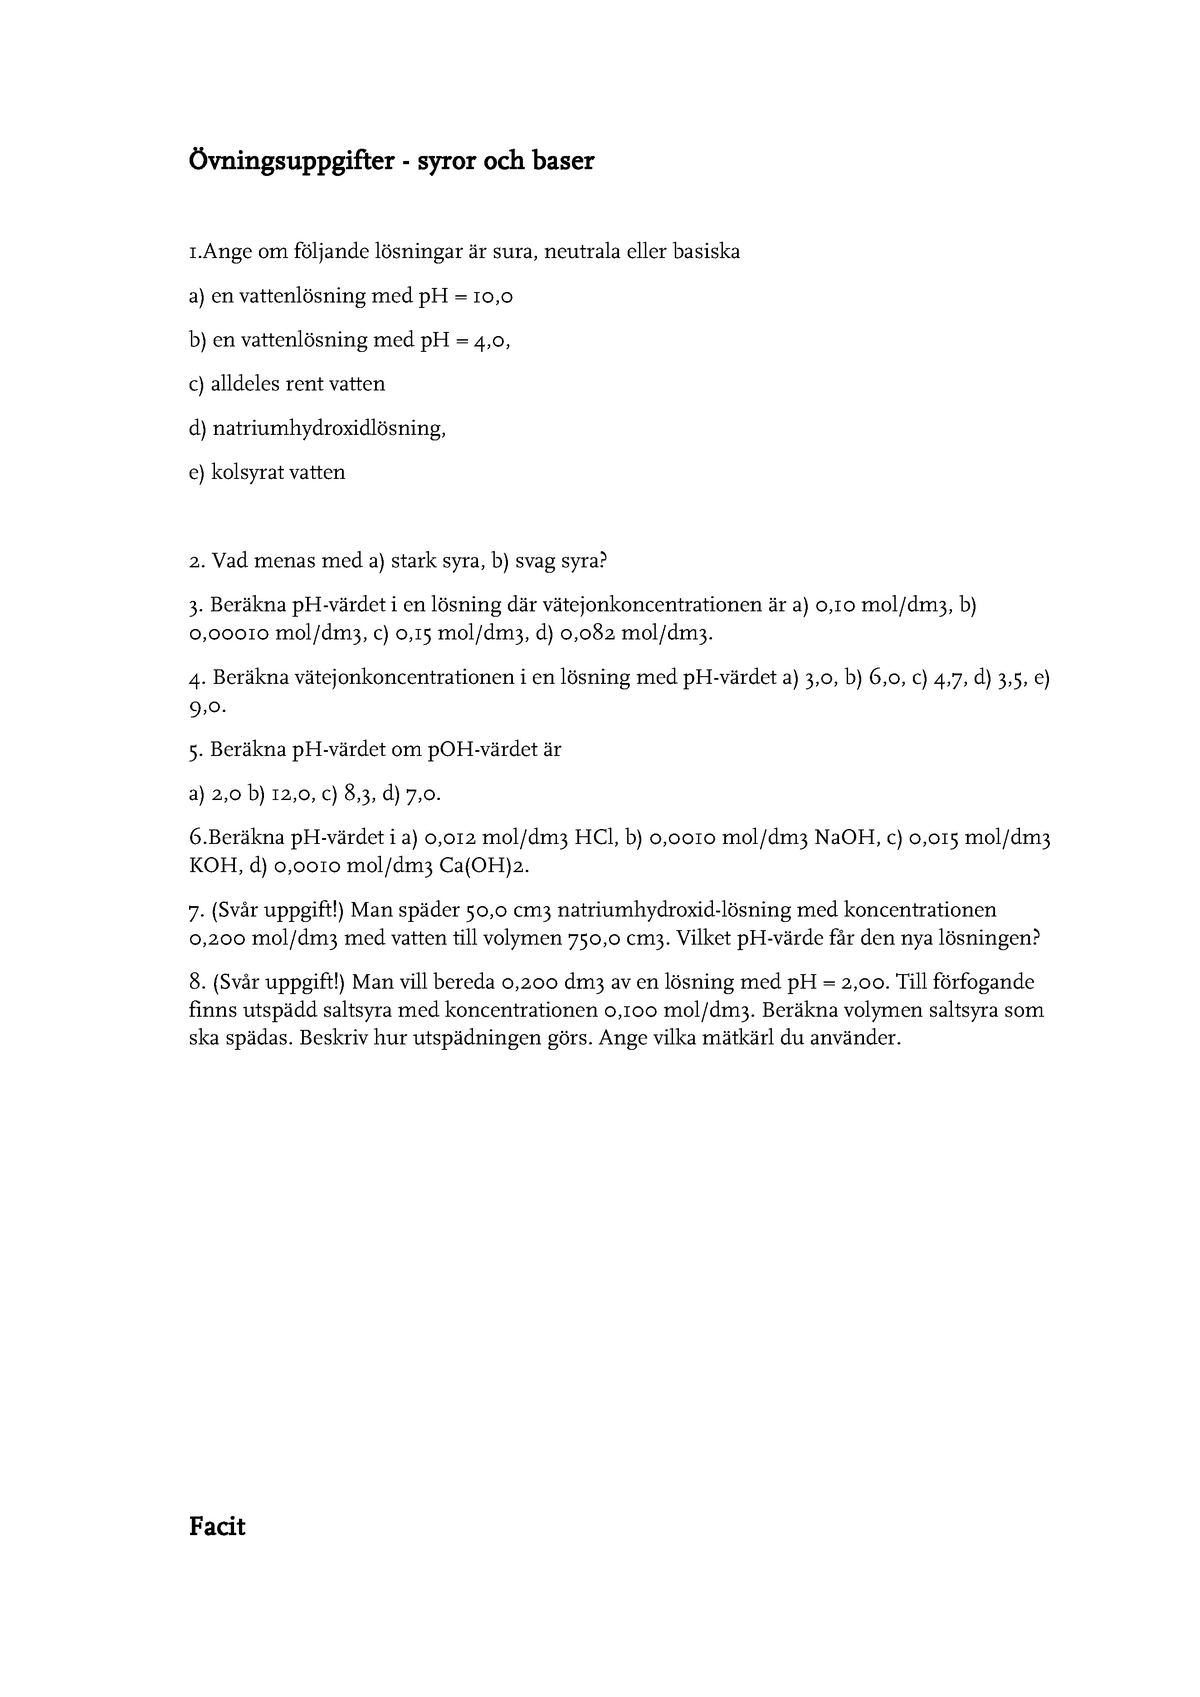 Räkneövning 4- Övningsuppgifter syror och baser - Övningsuppgifter - syror  och baser 1 om följande - Studocu